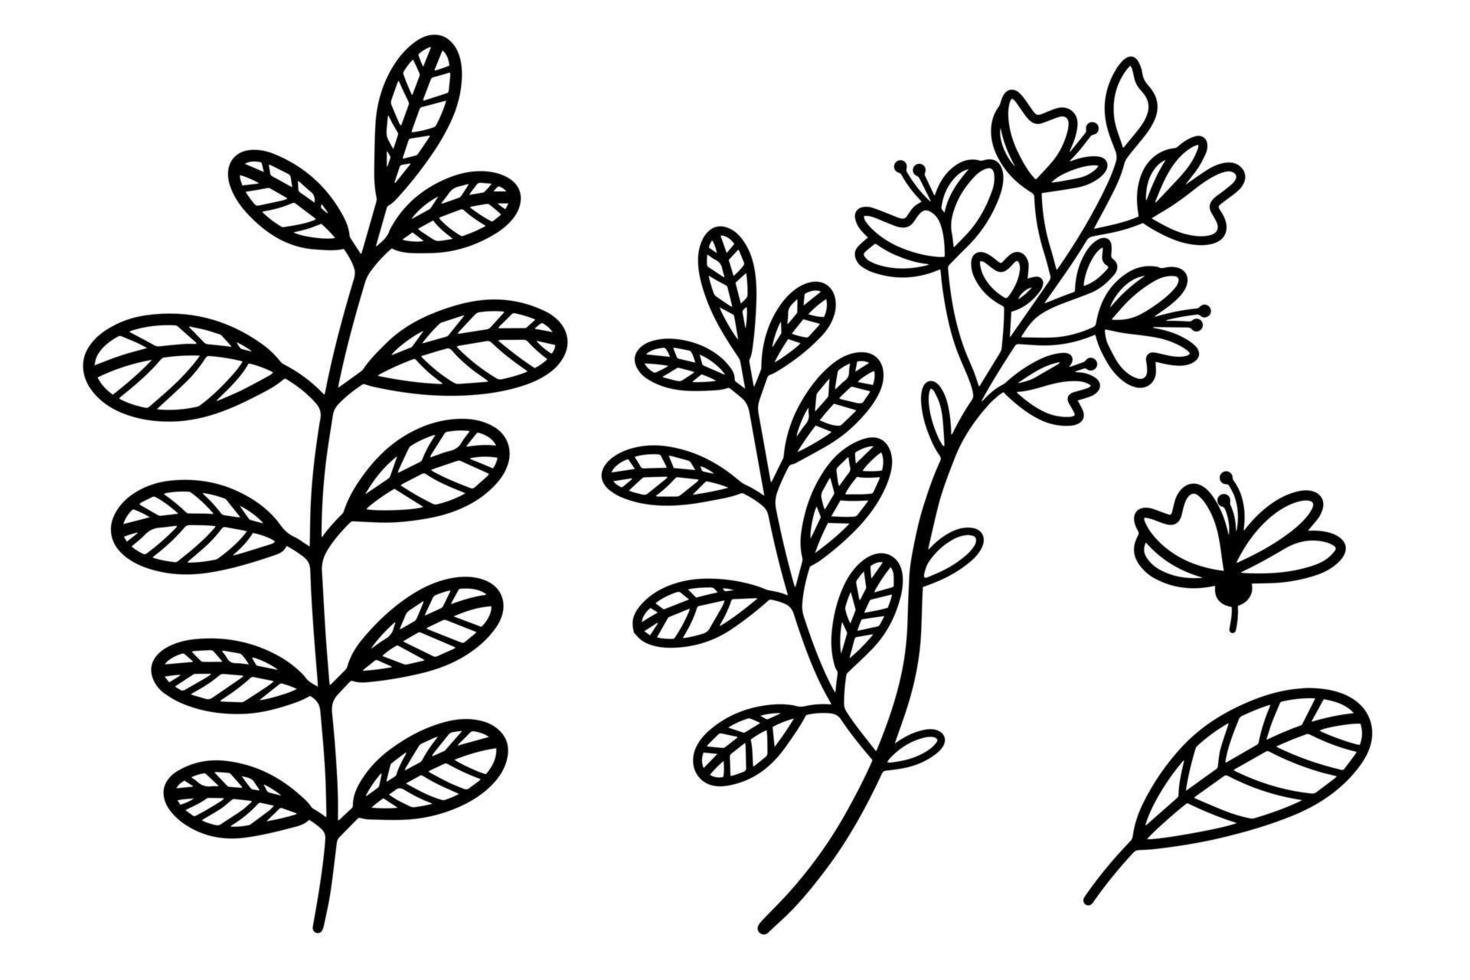 set van vectorillustraties van acacia. takken, bladeren, bloemen van zilverachtige acacia. handgetekende botanische schets. dunne plant omtrek, zwarte doodle. geïsoleerde illustratie van een boom vector